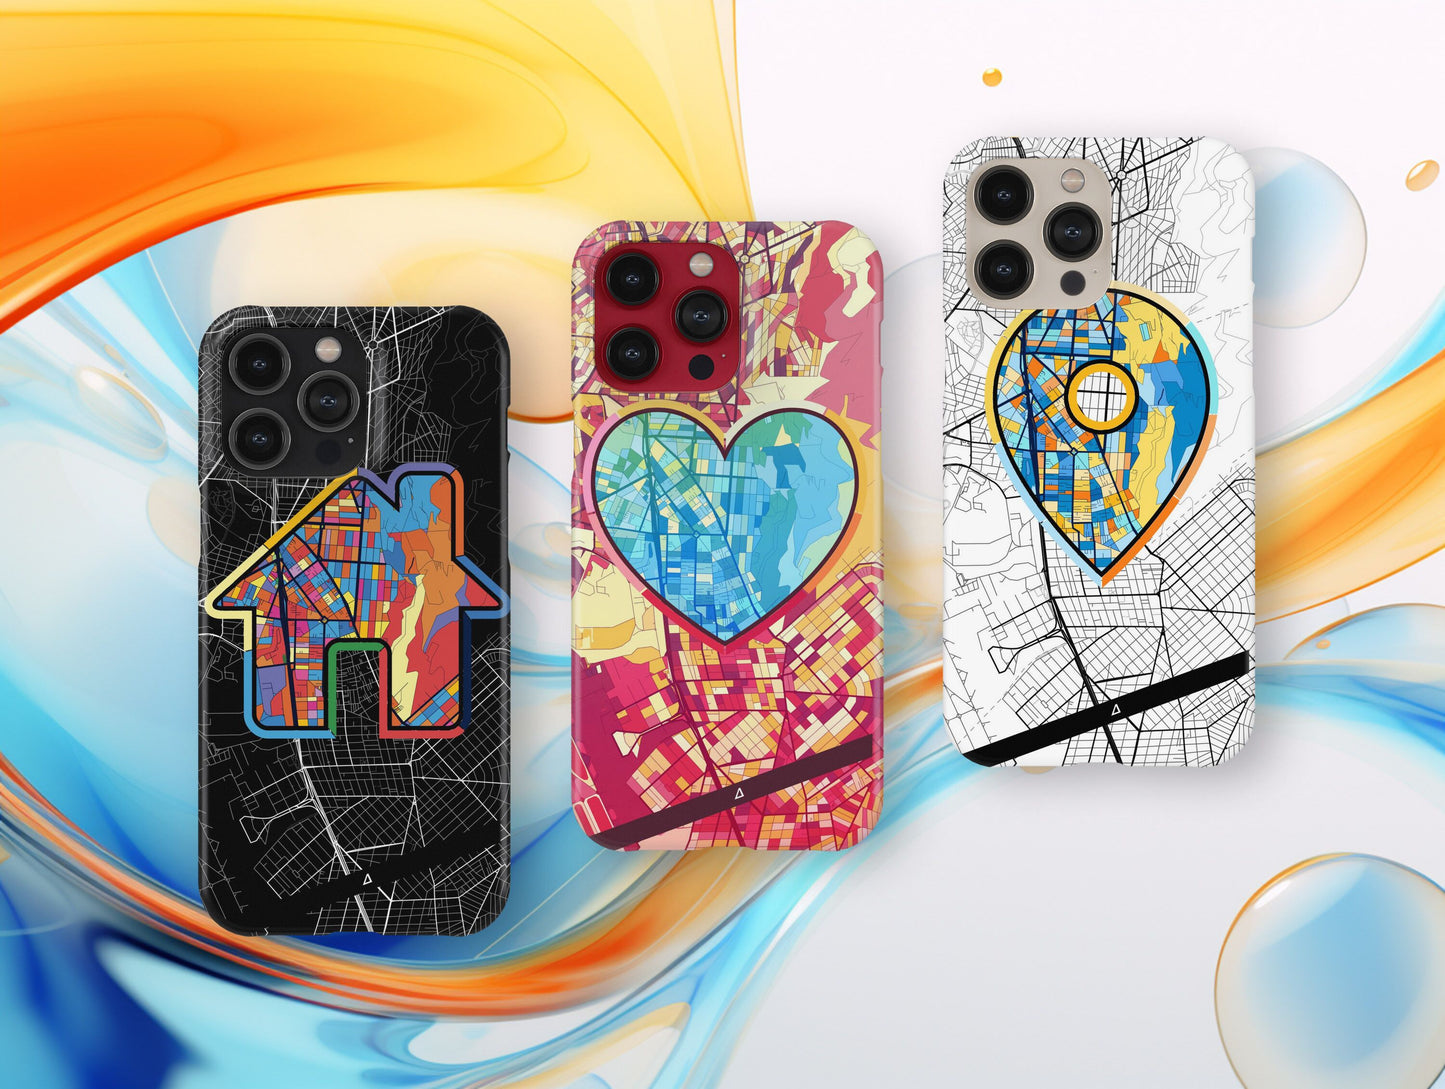 Αργυρουπολη Ελλαδα slim phone case with colorful icon